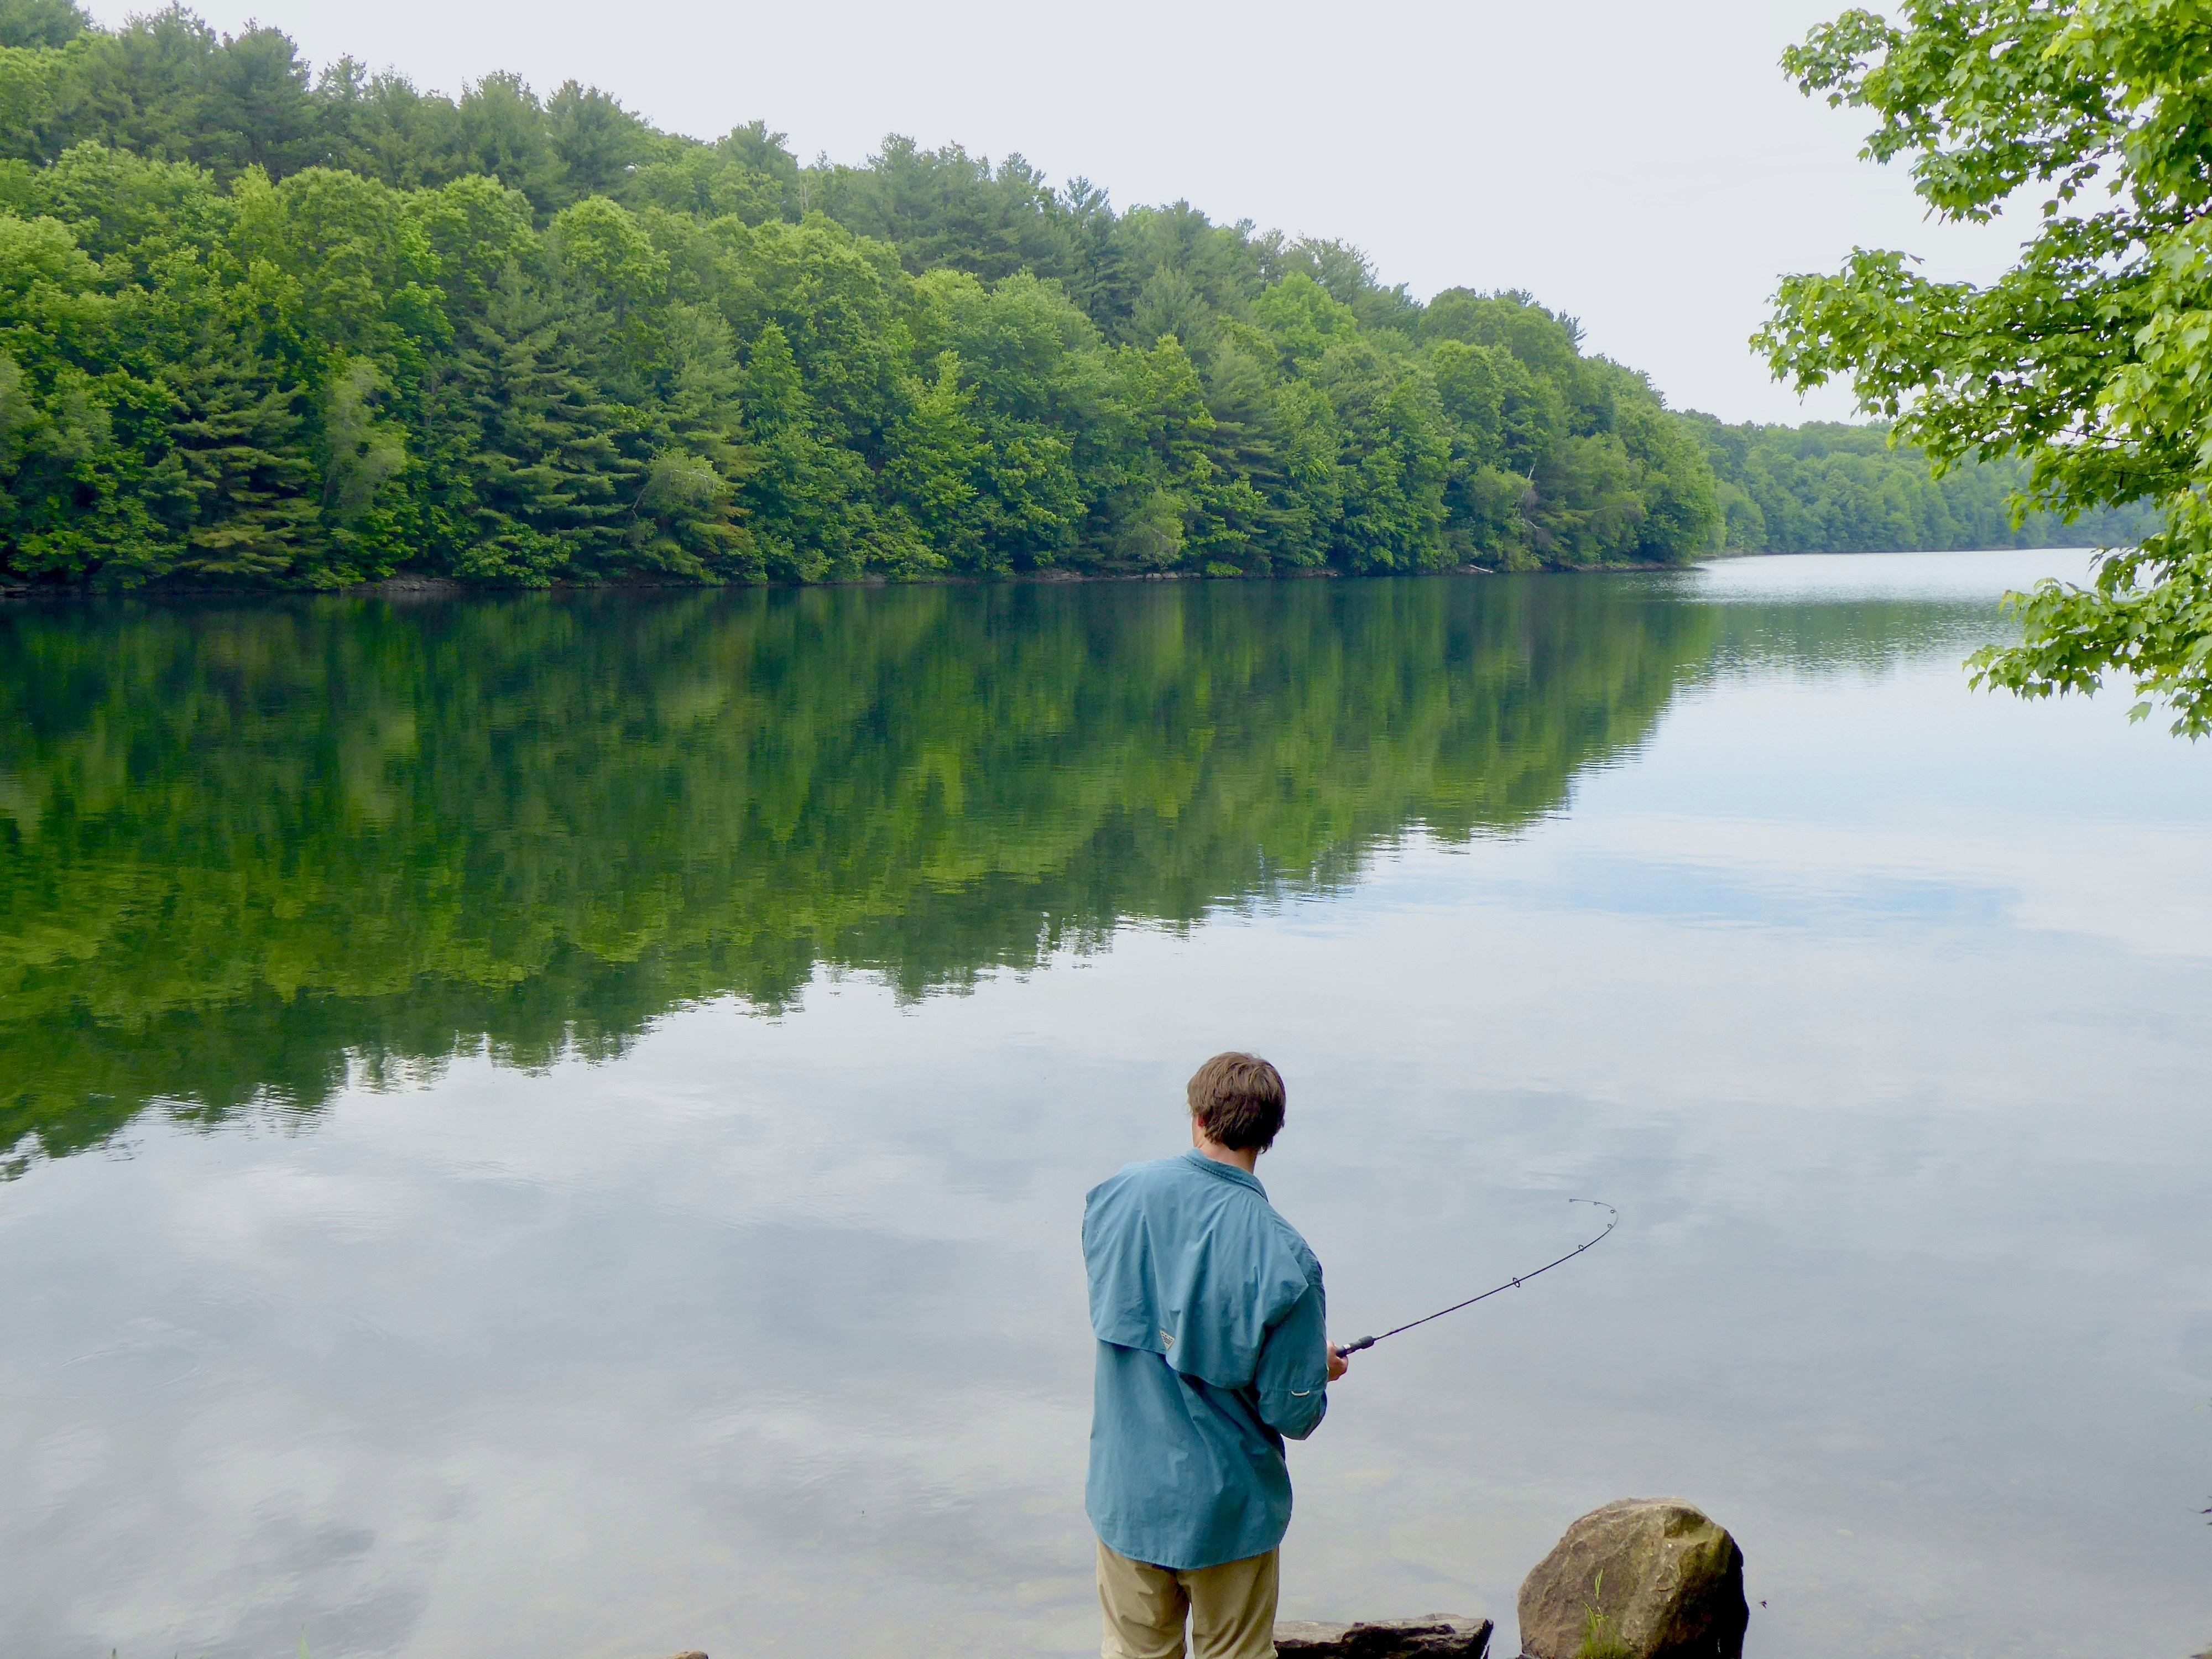 man in blue shirt fishing on lake during daytime